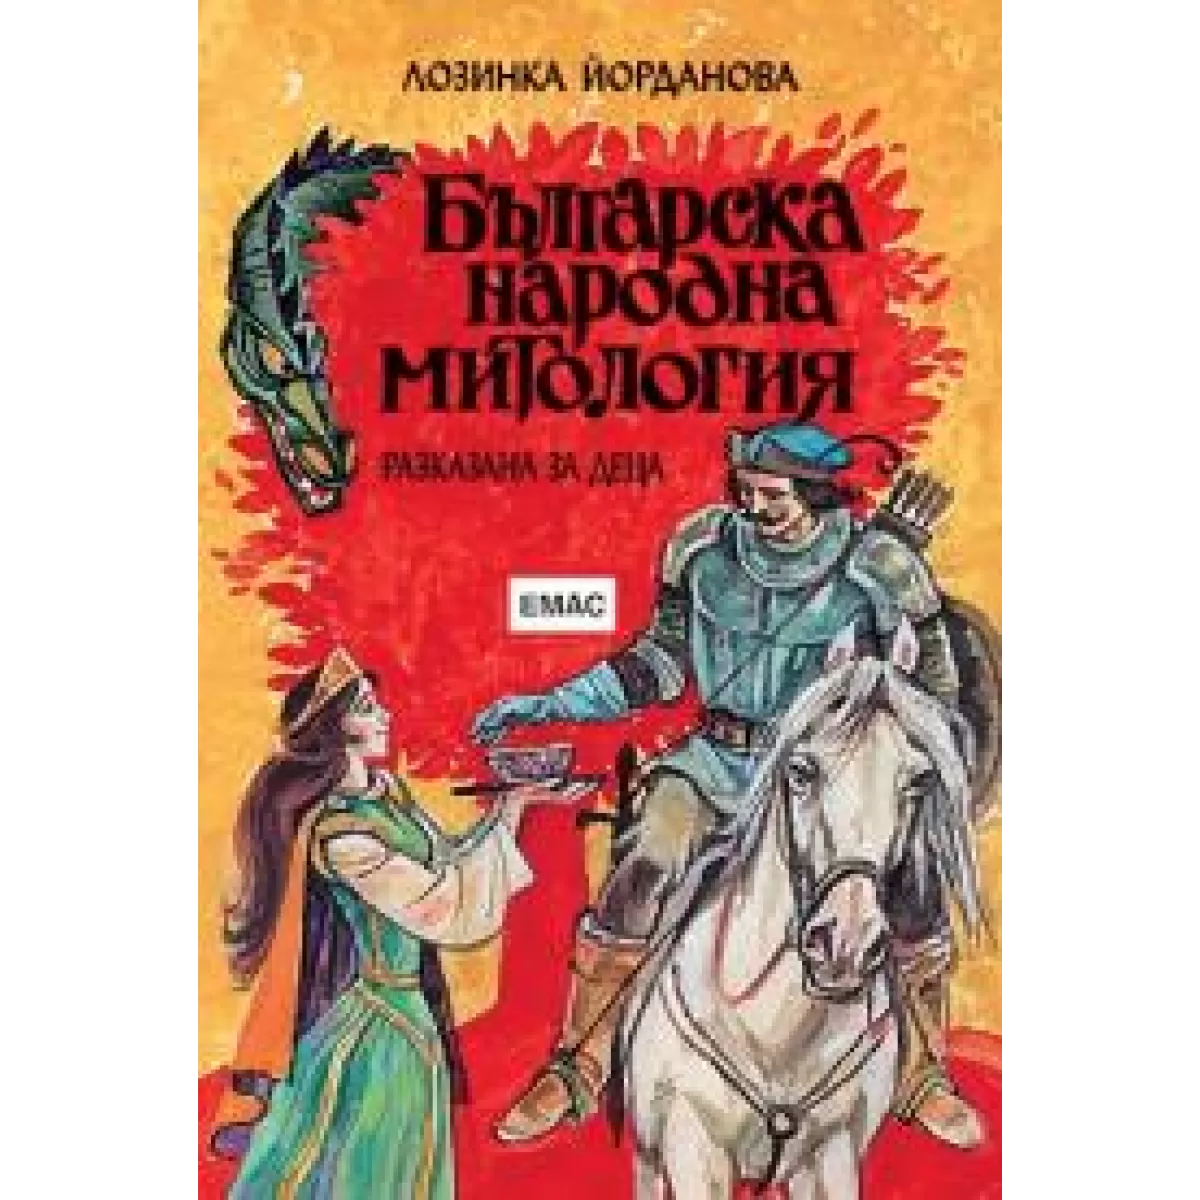 Българска народна митология разказана за деца